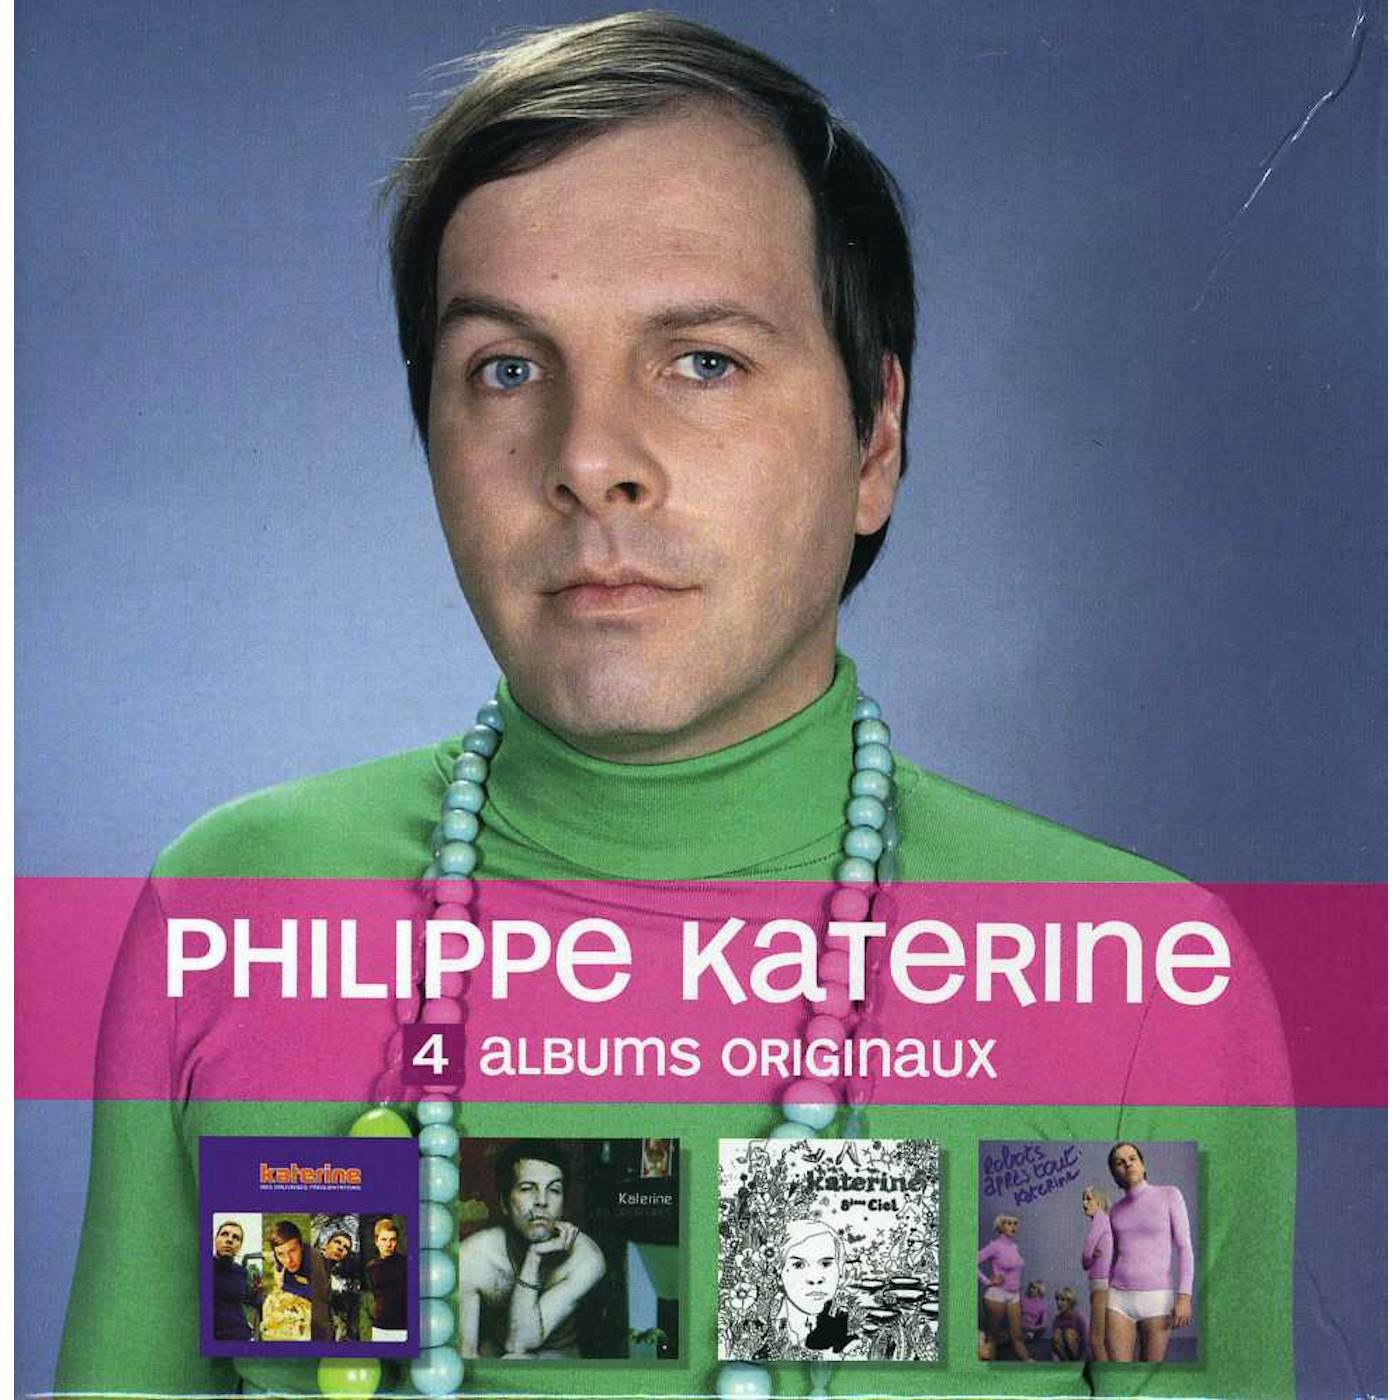 Philippe Katerine 4 ALBUMS ORIGINAUX CD